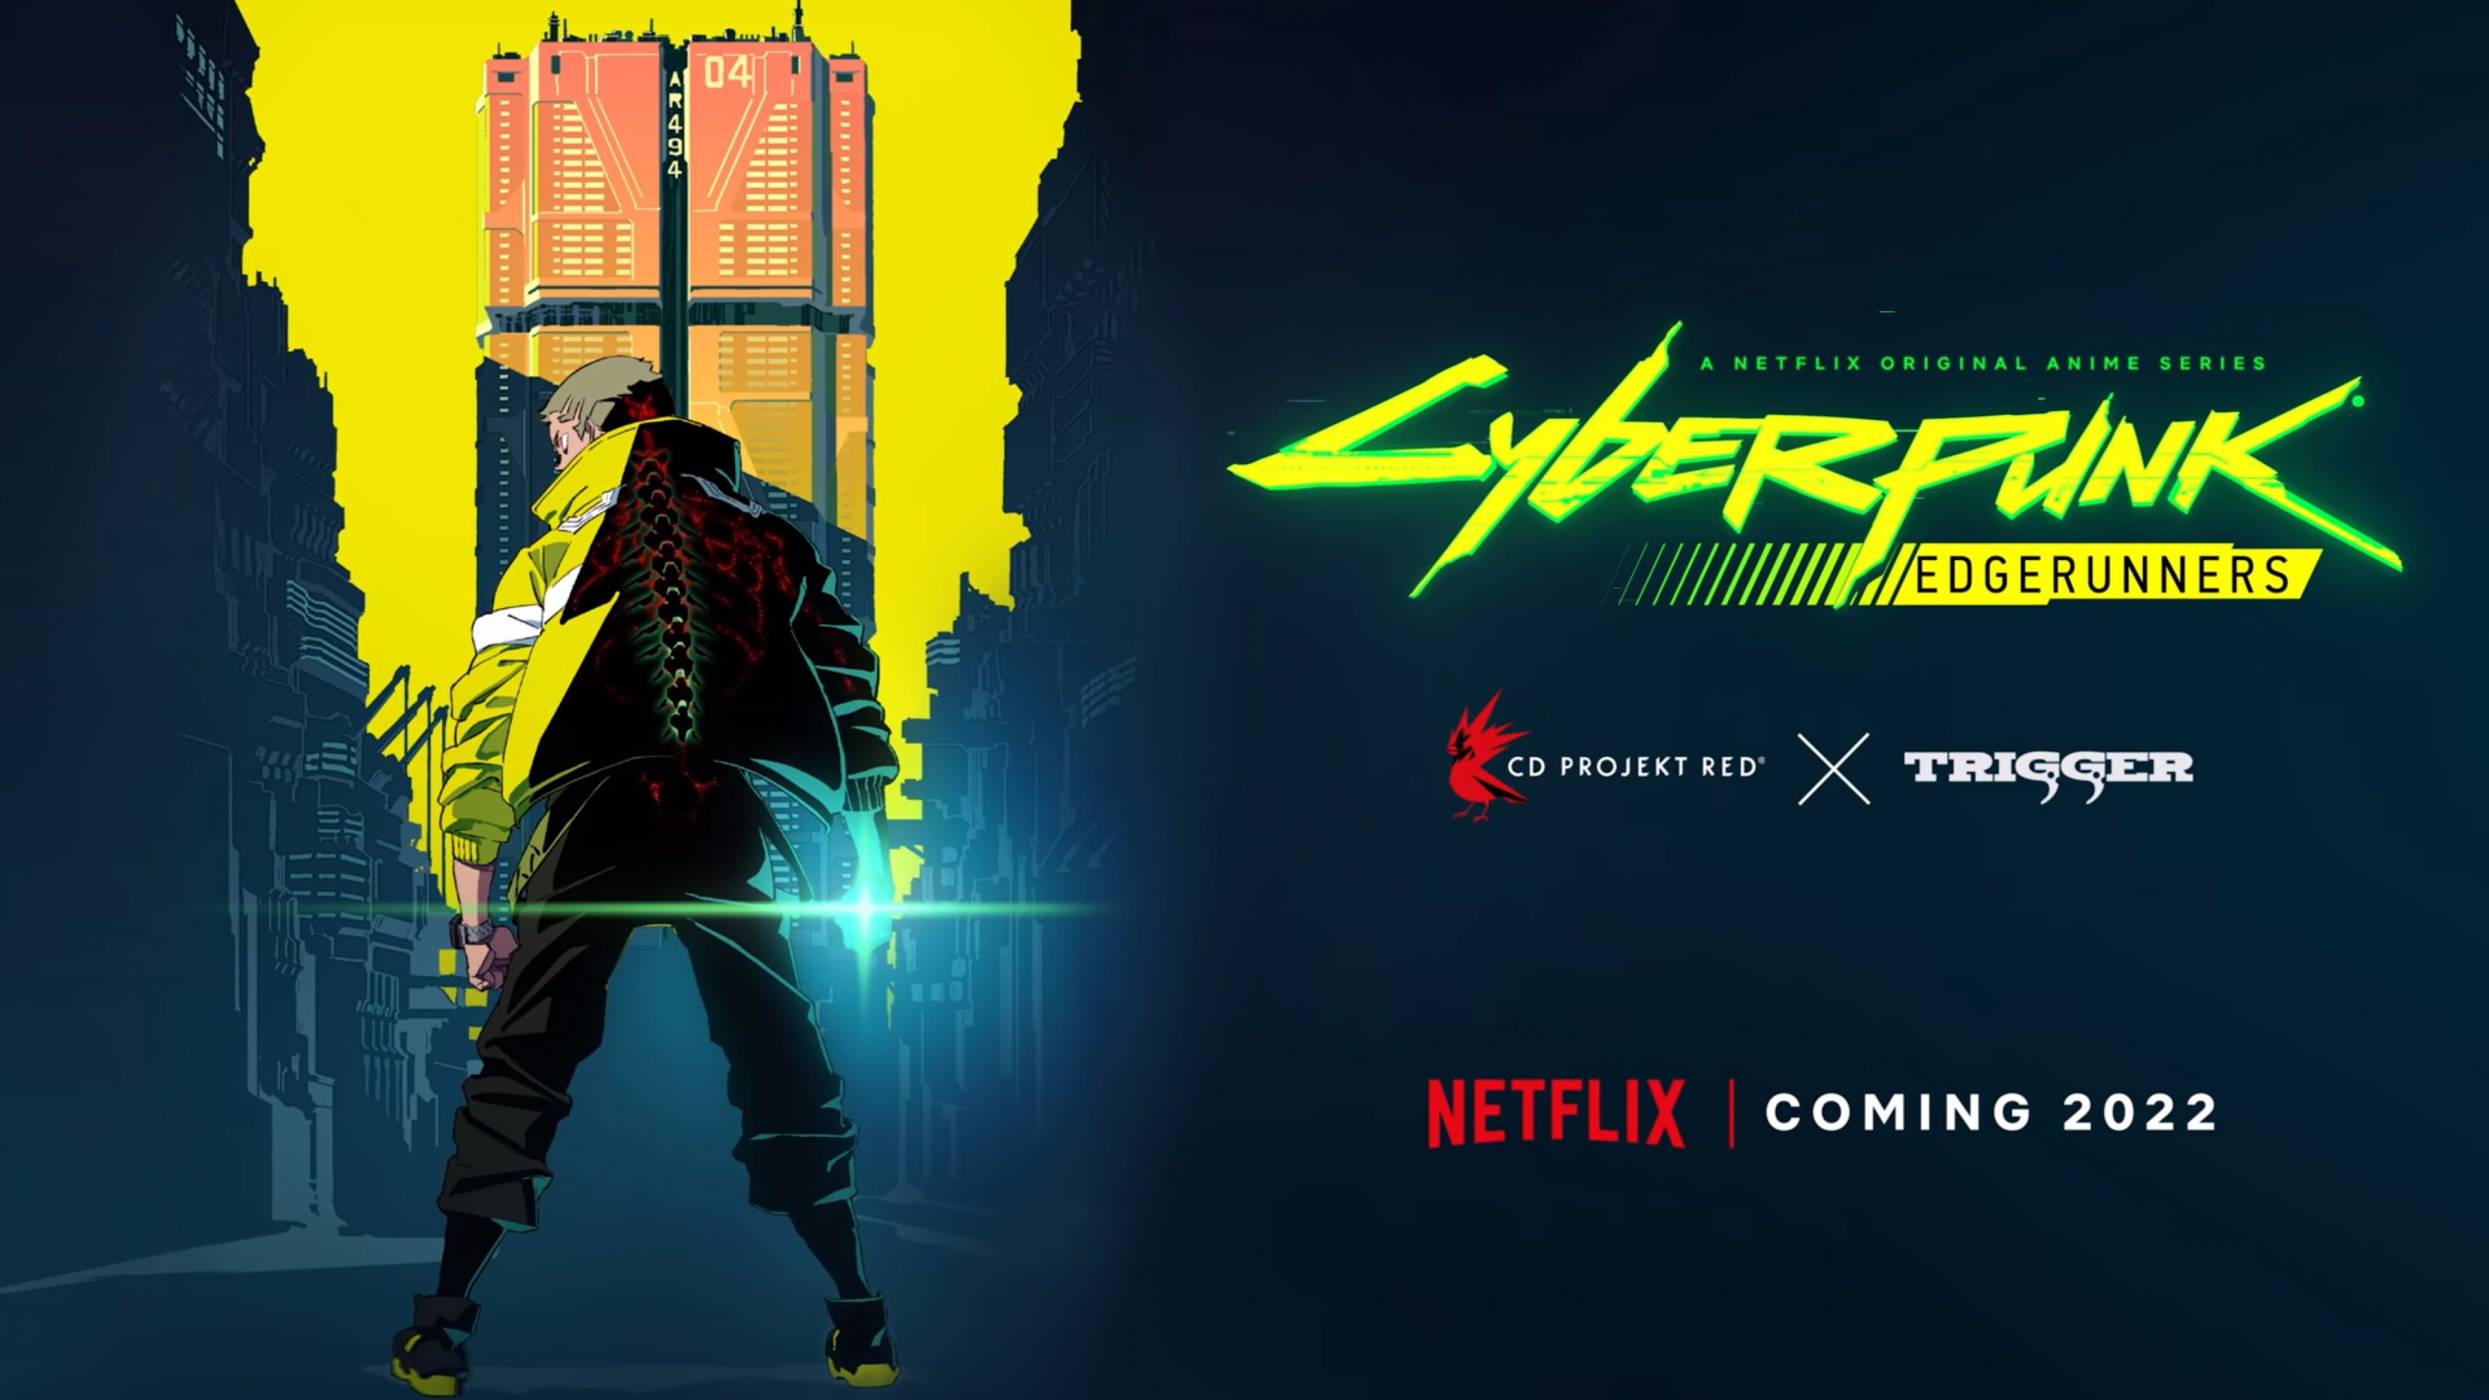 Cyberpunk 2077 още не е излязла, но Netflix вече готви аниме по играта (4K ВИДЕО)